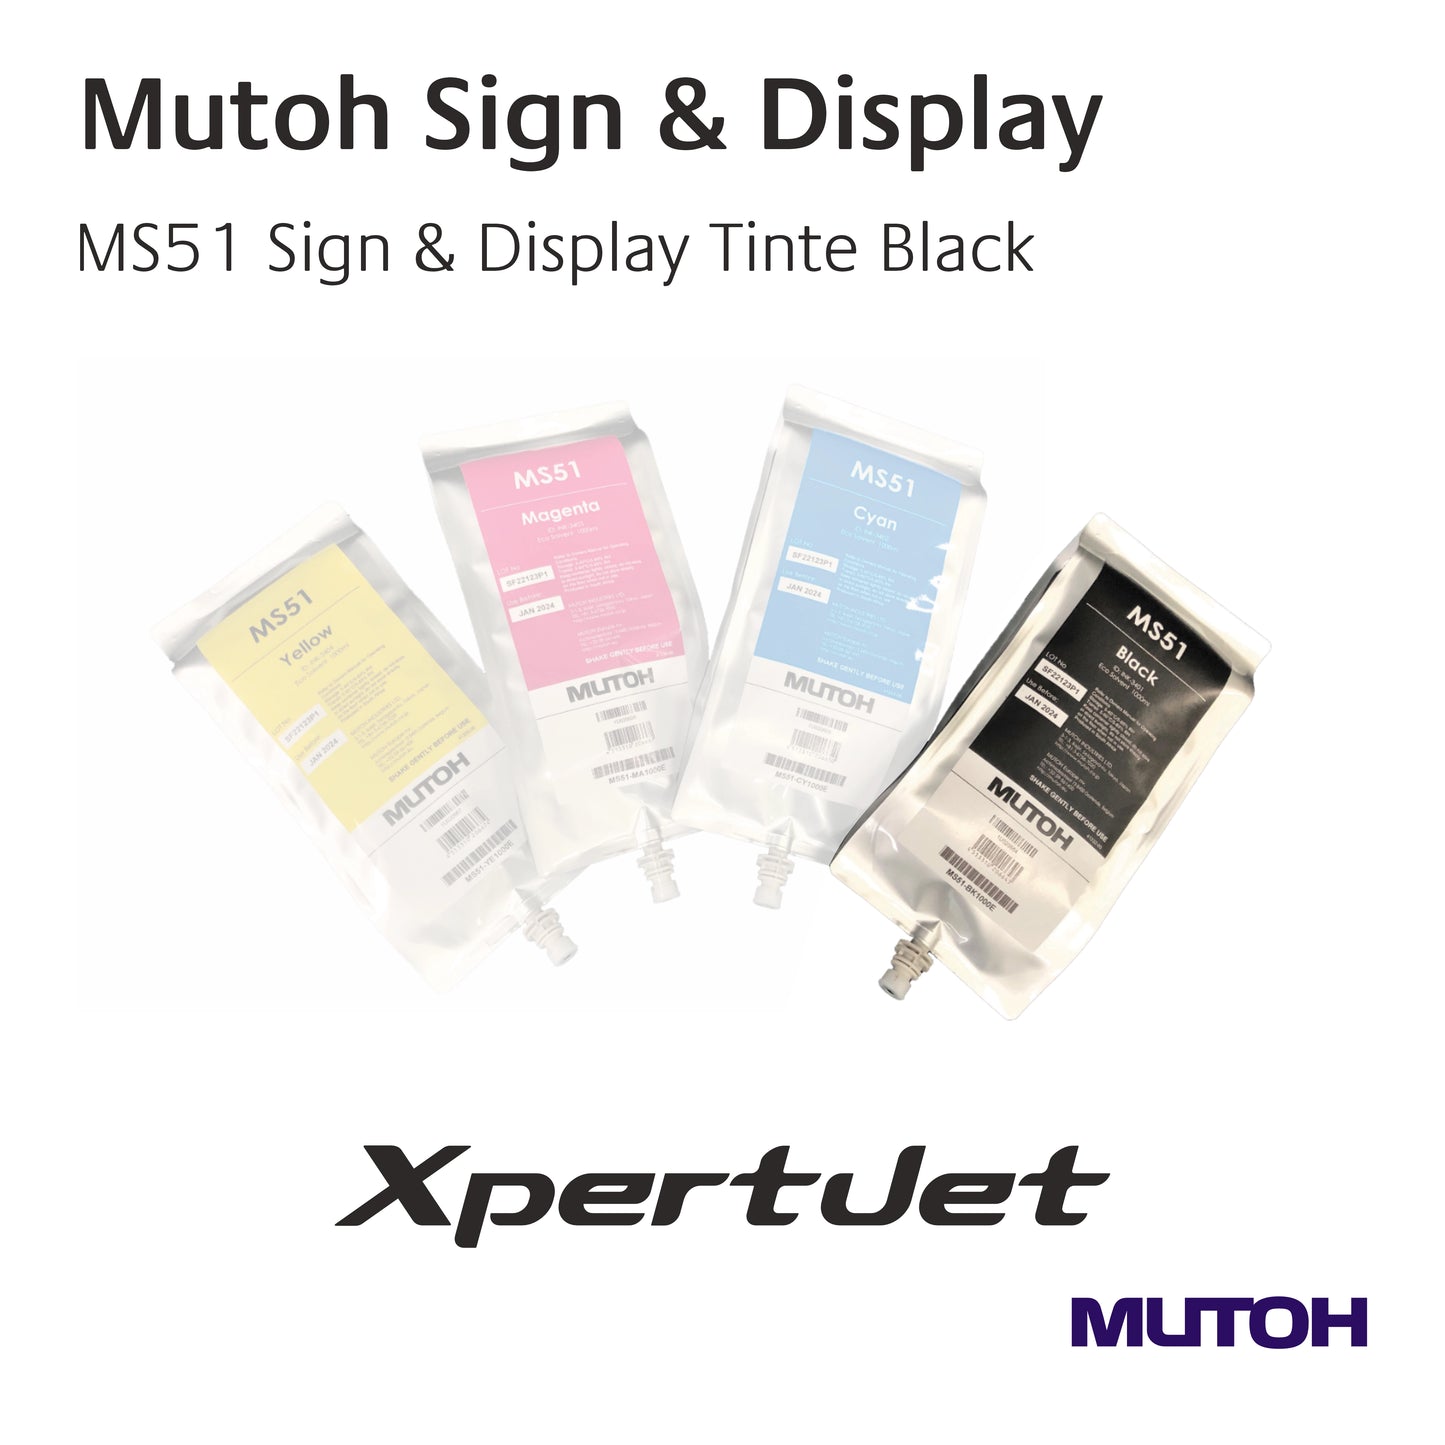 Mutoh - MS51 Sign & Display Tinten